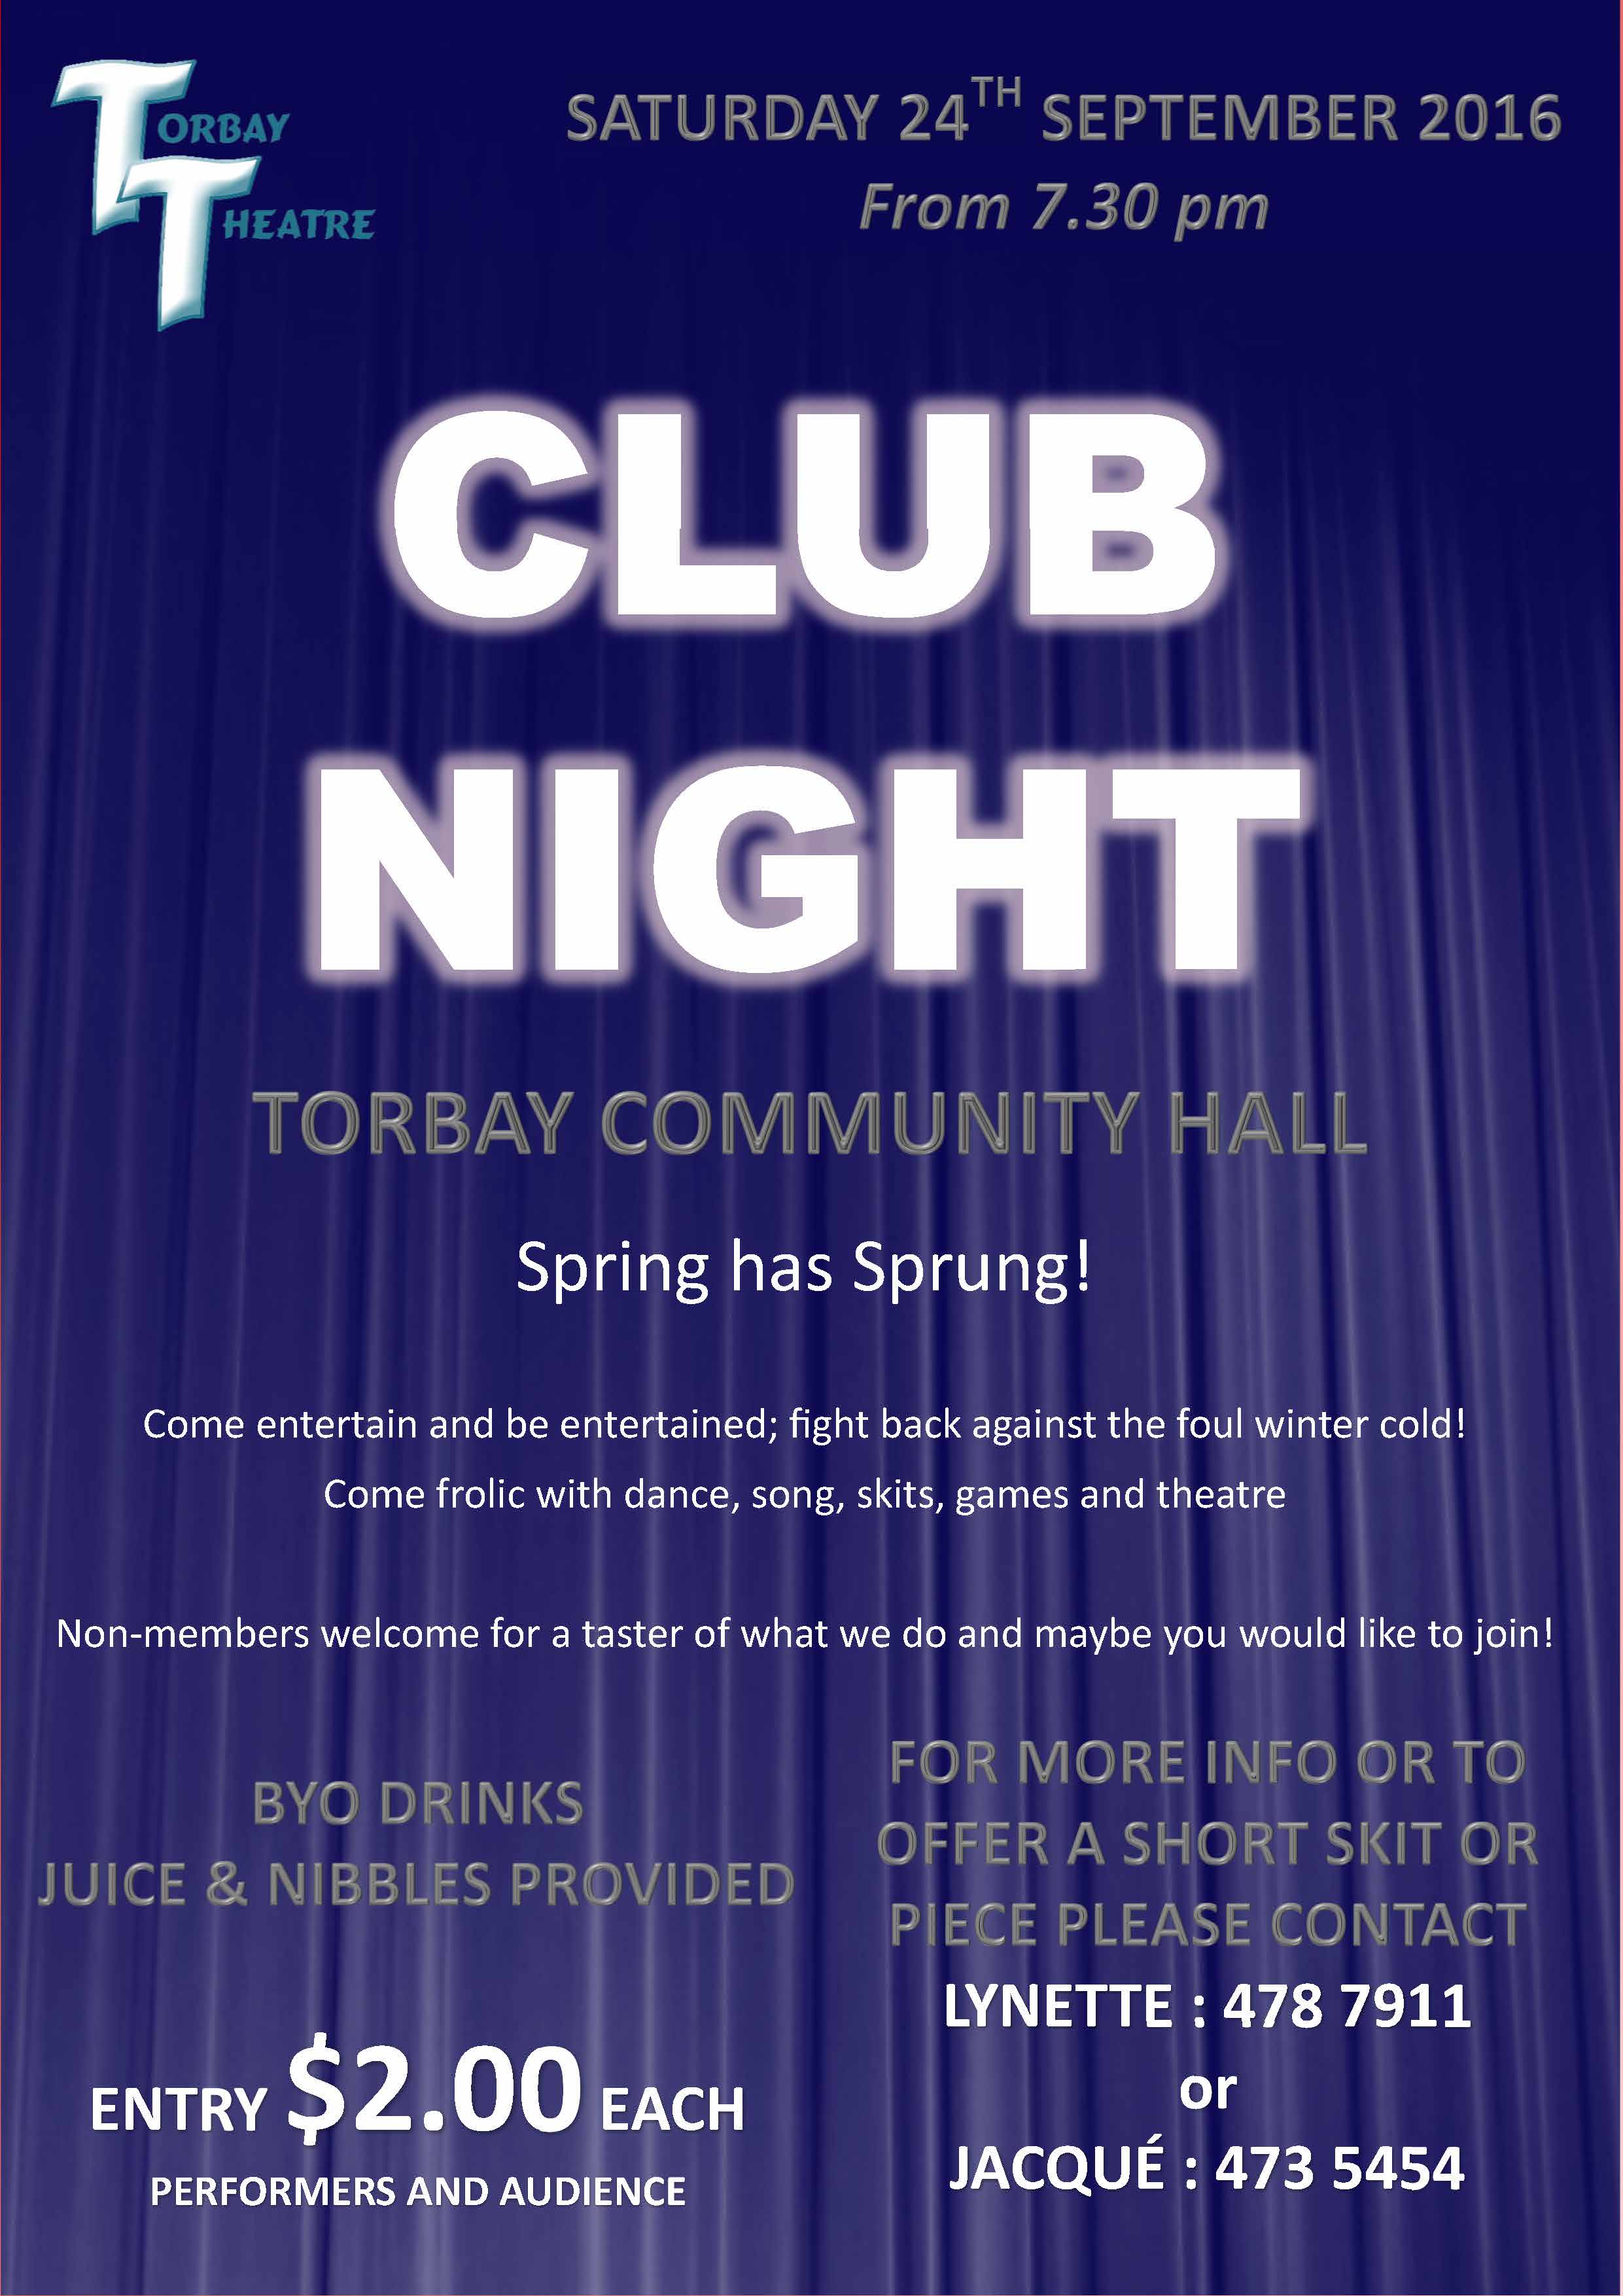 TORBAY THEATRE CLUB NIGHT